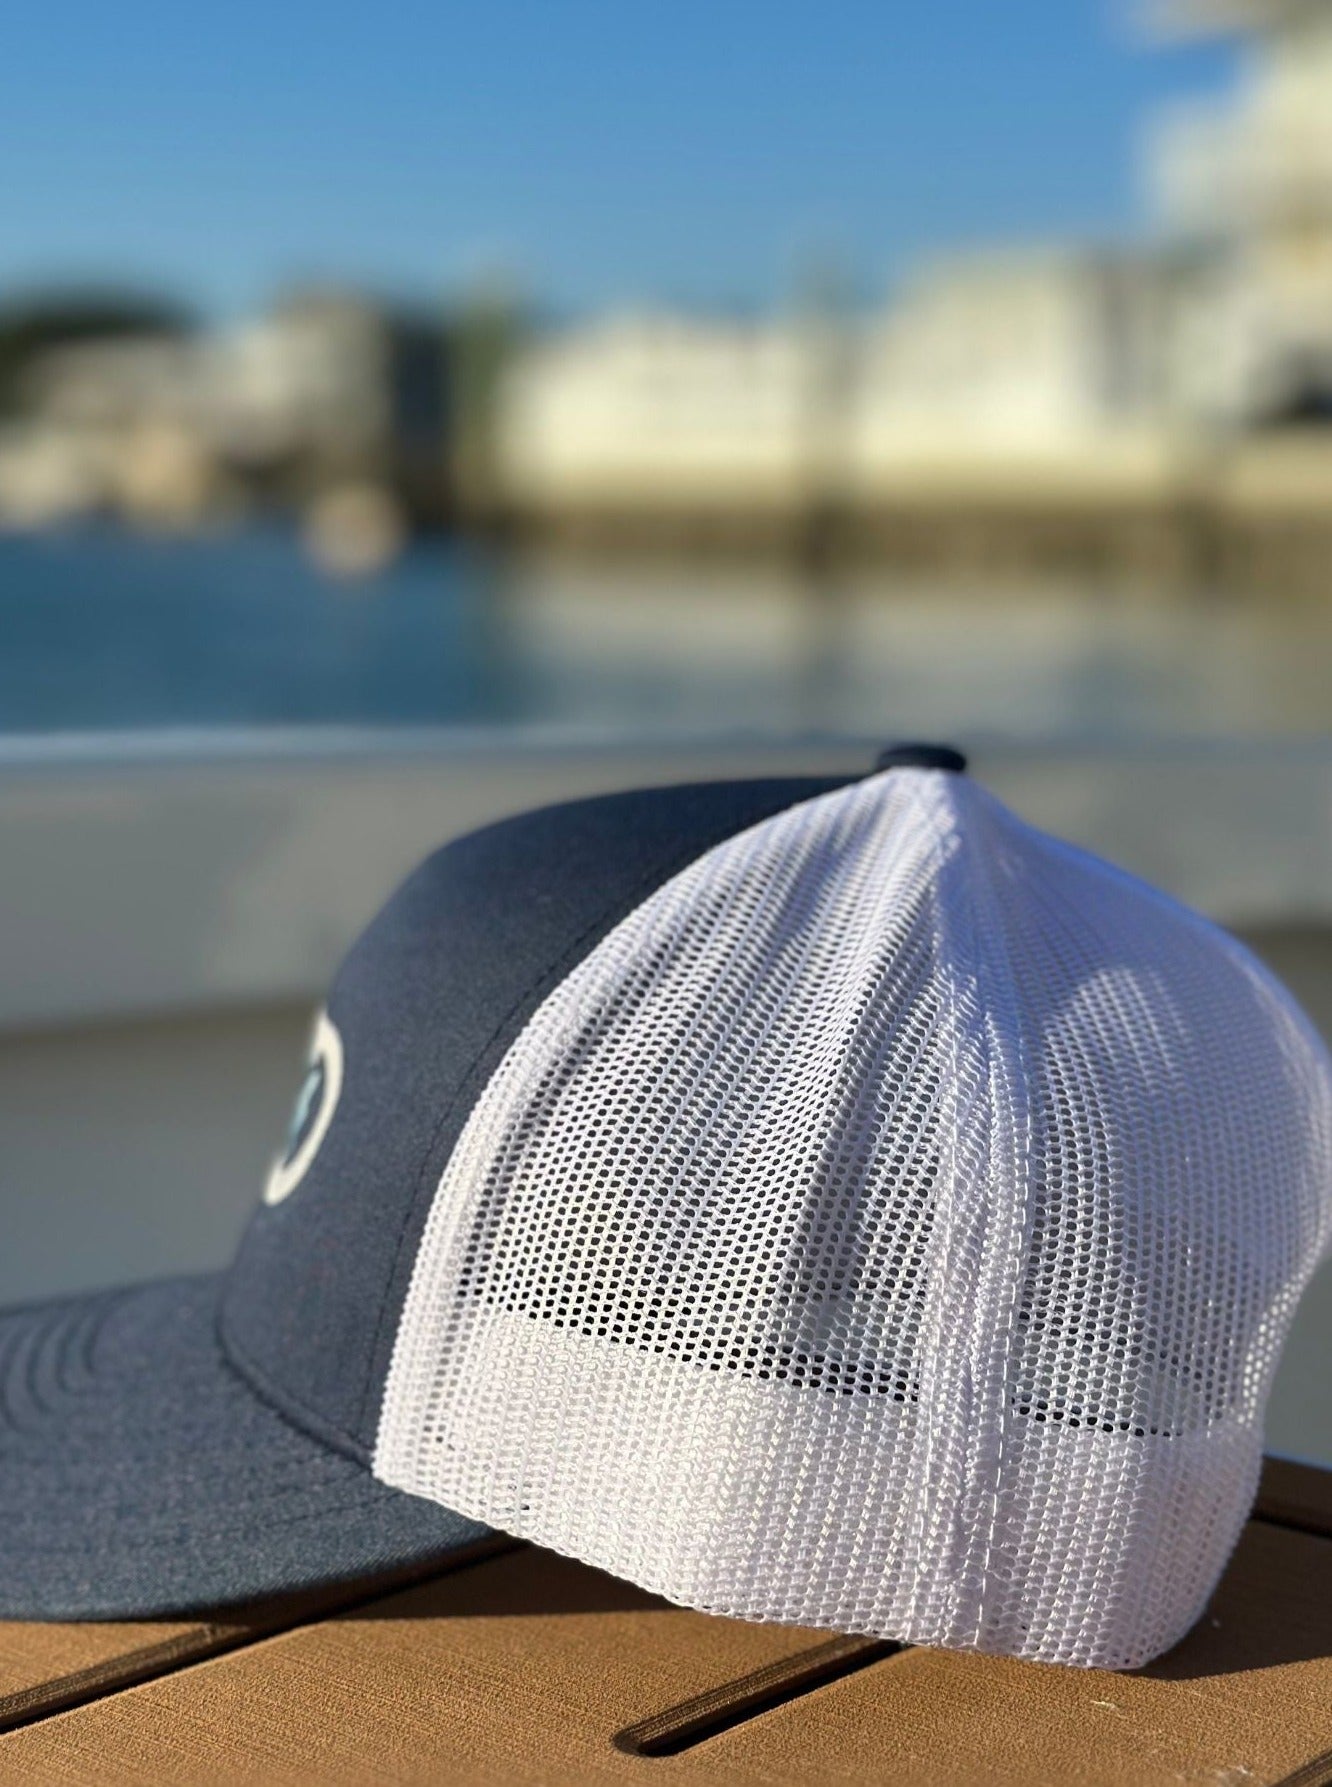 Sta-Stuk Hooks Navy Logo Trucker Hat